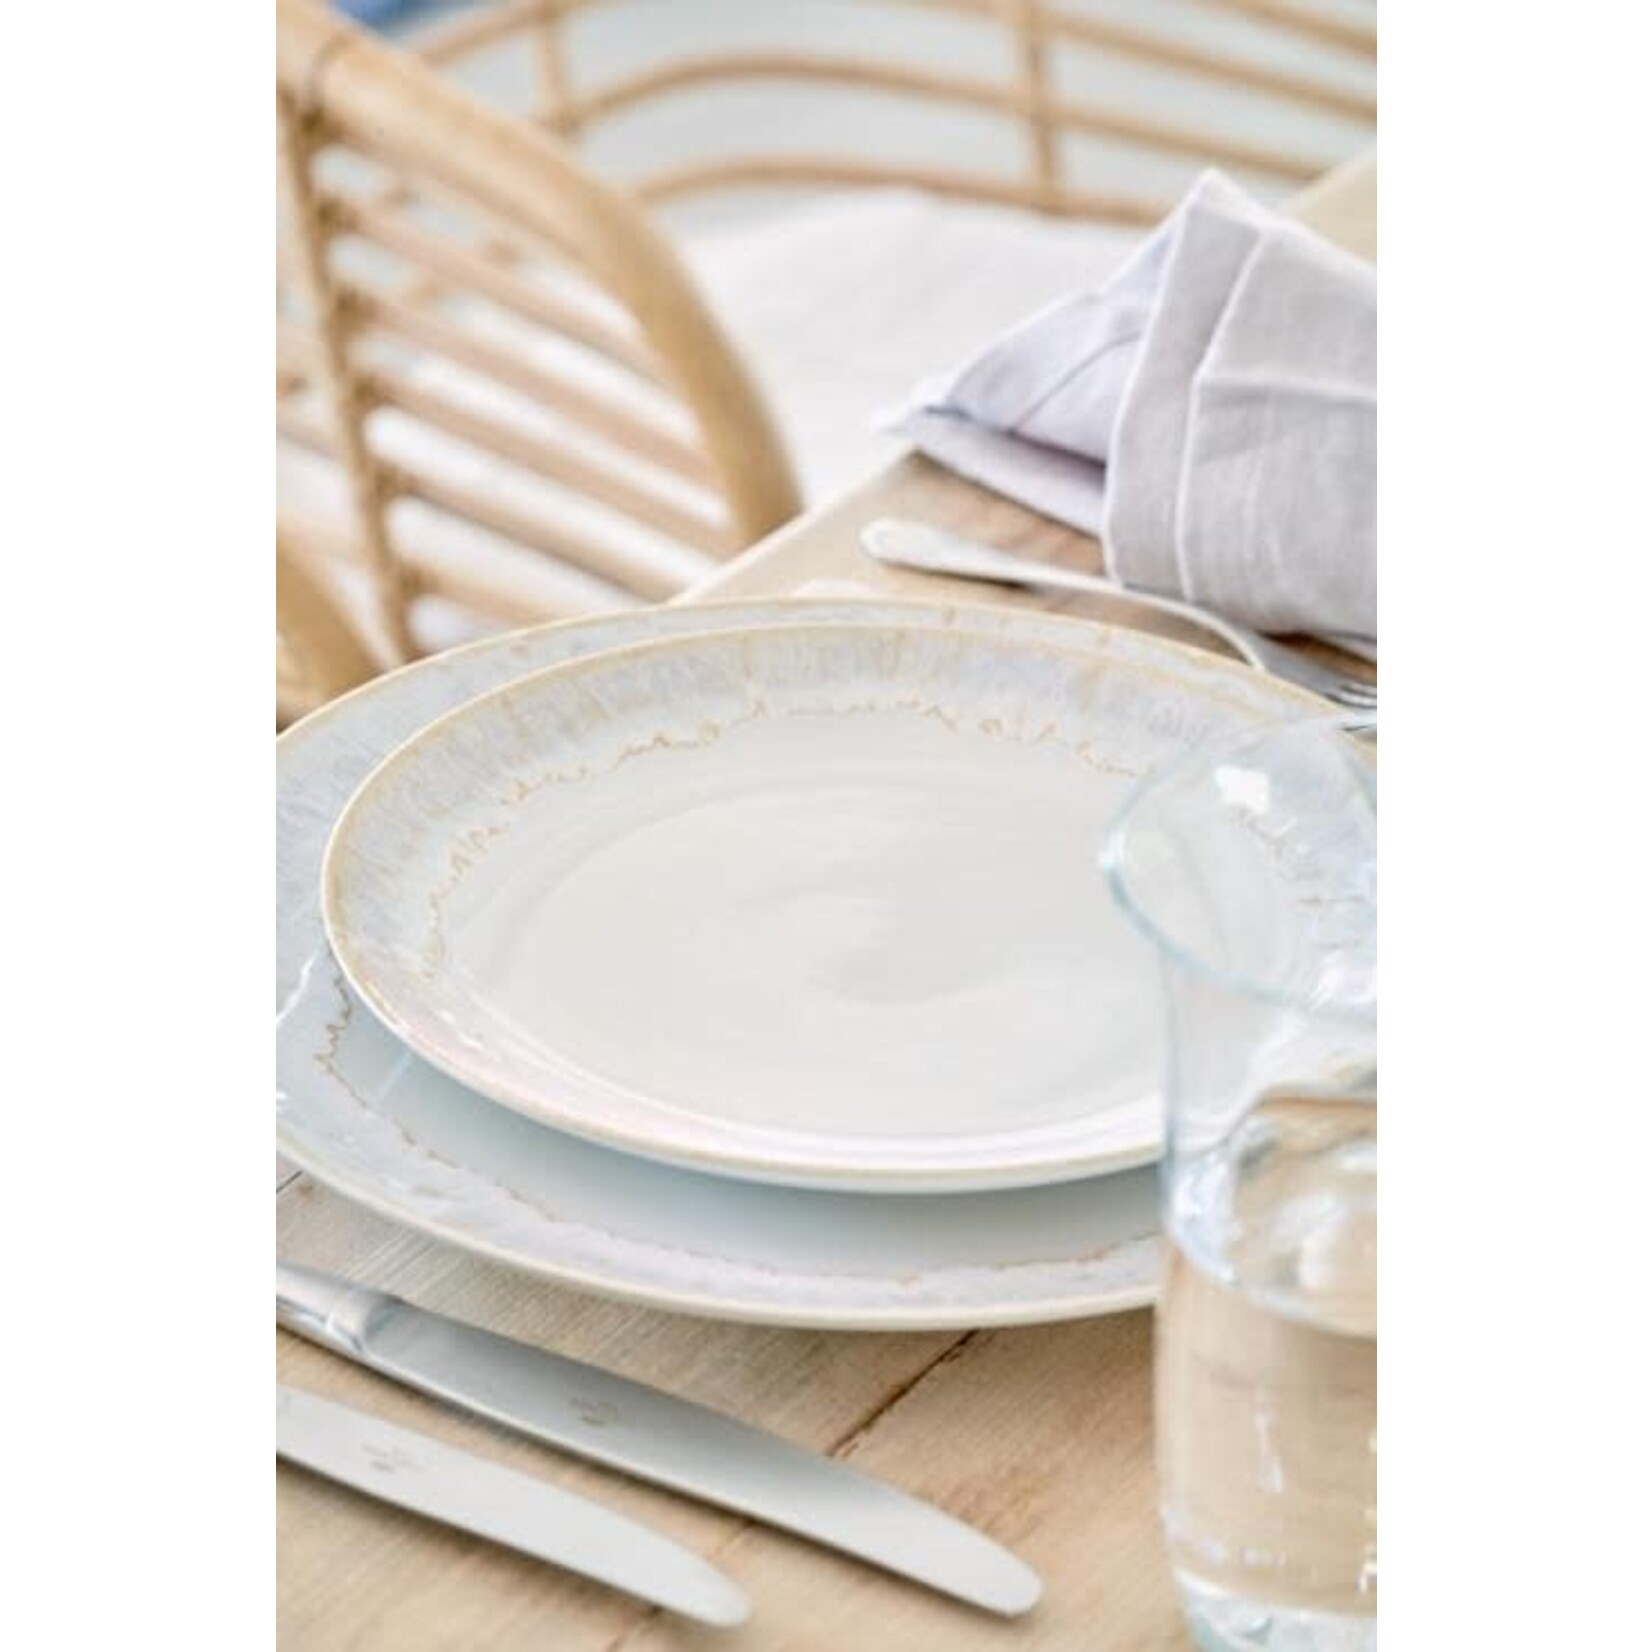 CASAFINA LIVING Taormina Dinner Plate, White